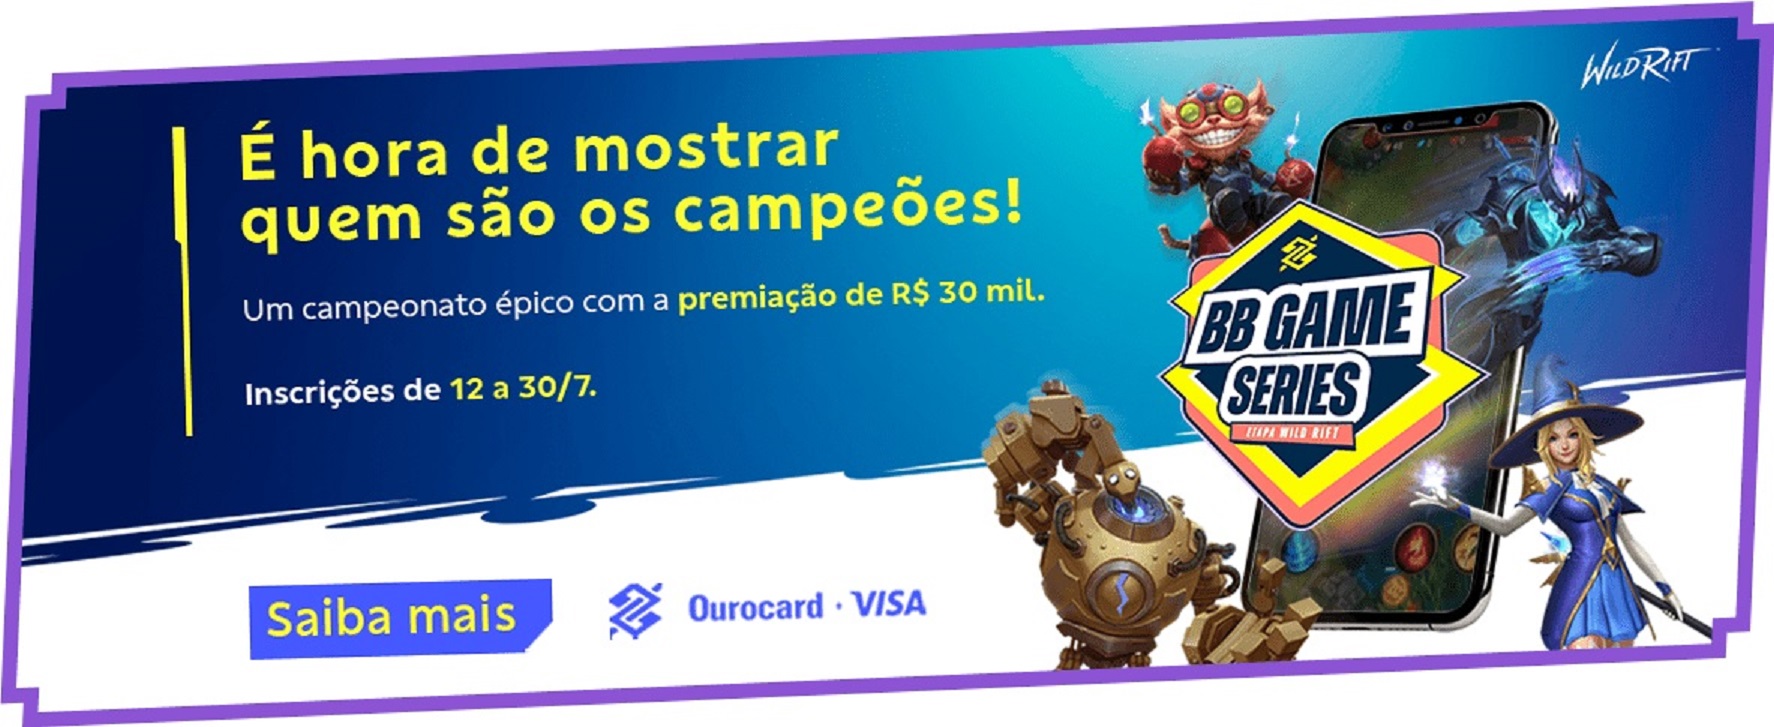 Banco do Brasil anuncia BB Game Series Etapa Wild Rift com R$ 30 mil em premiação